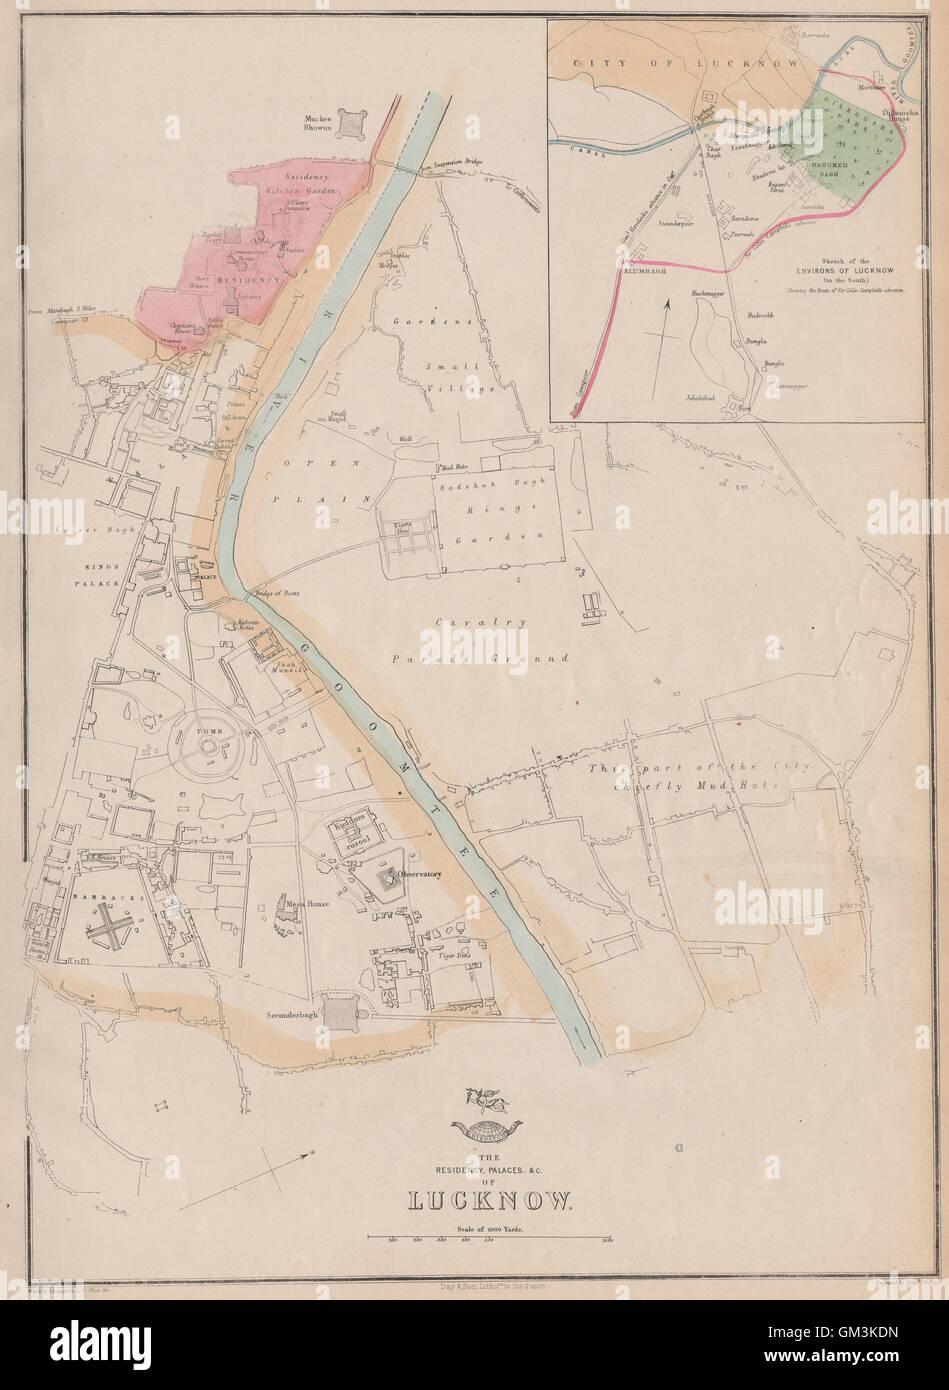 LUCKNOW & Résidence Palais. Plan de la ville.montre Campbell's avance.Weller, 1863 map Banque D'Images